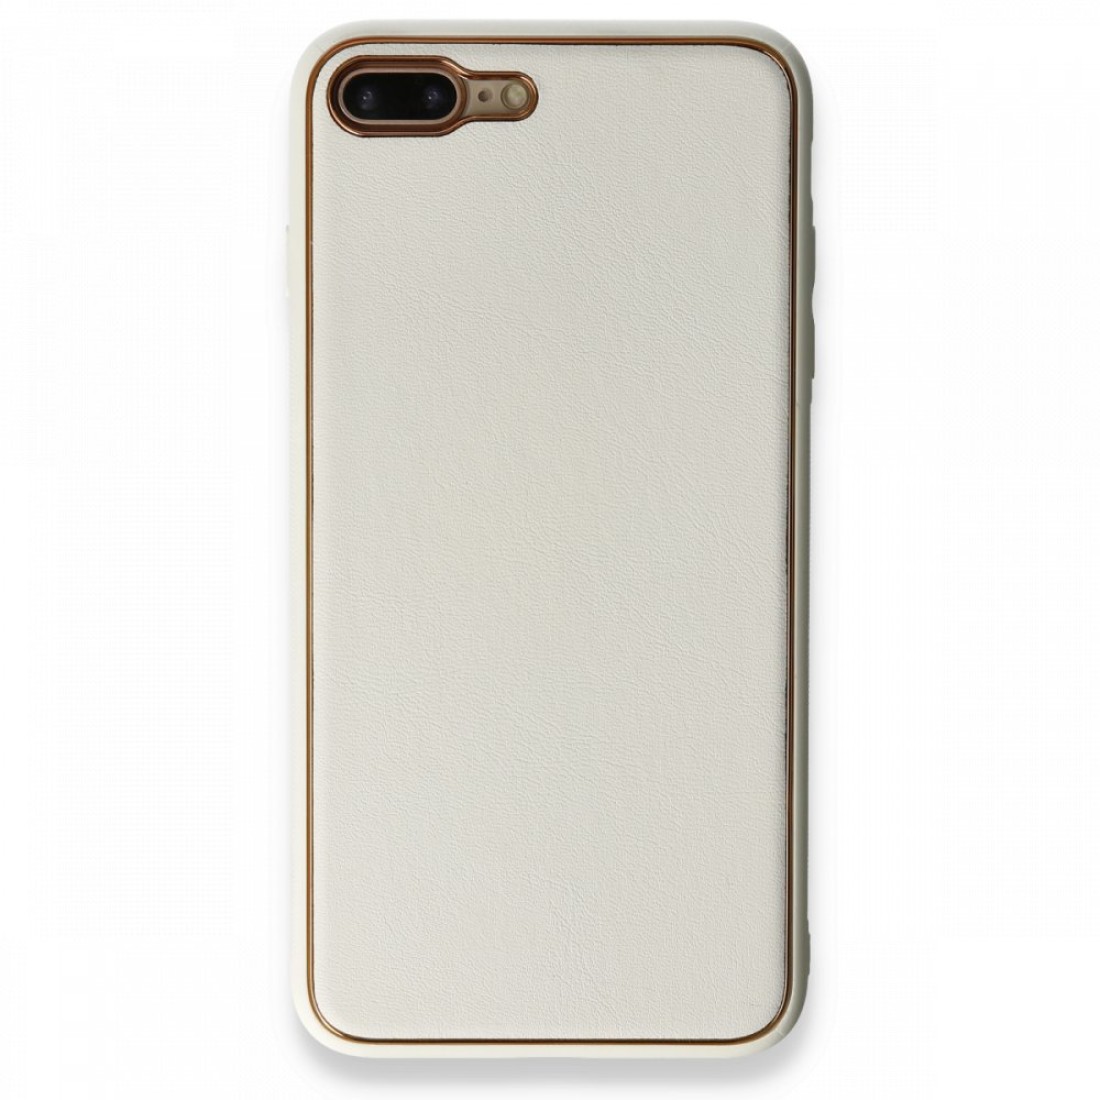 Apple iPhone 8 Plus Kılıf Coco Deri Silikon Kapak - Beyaz